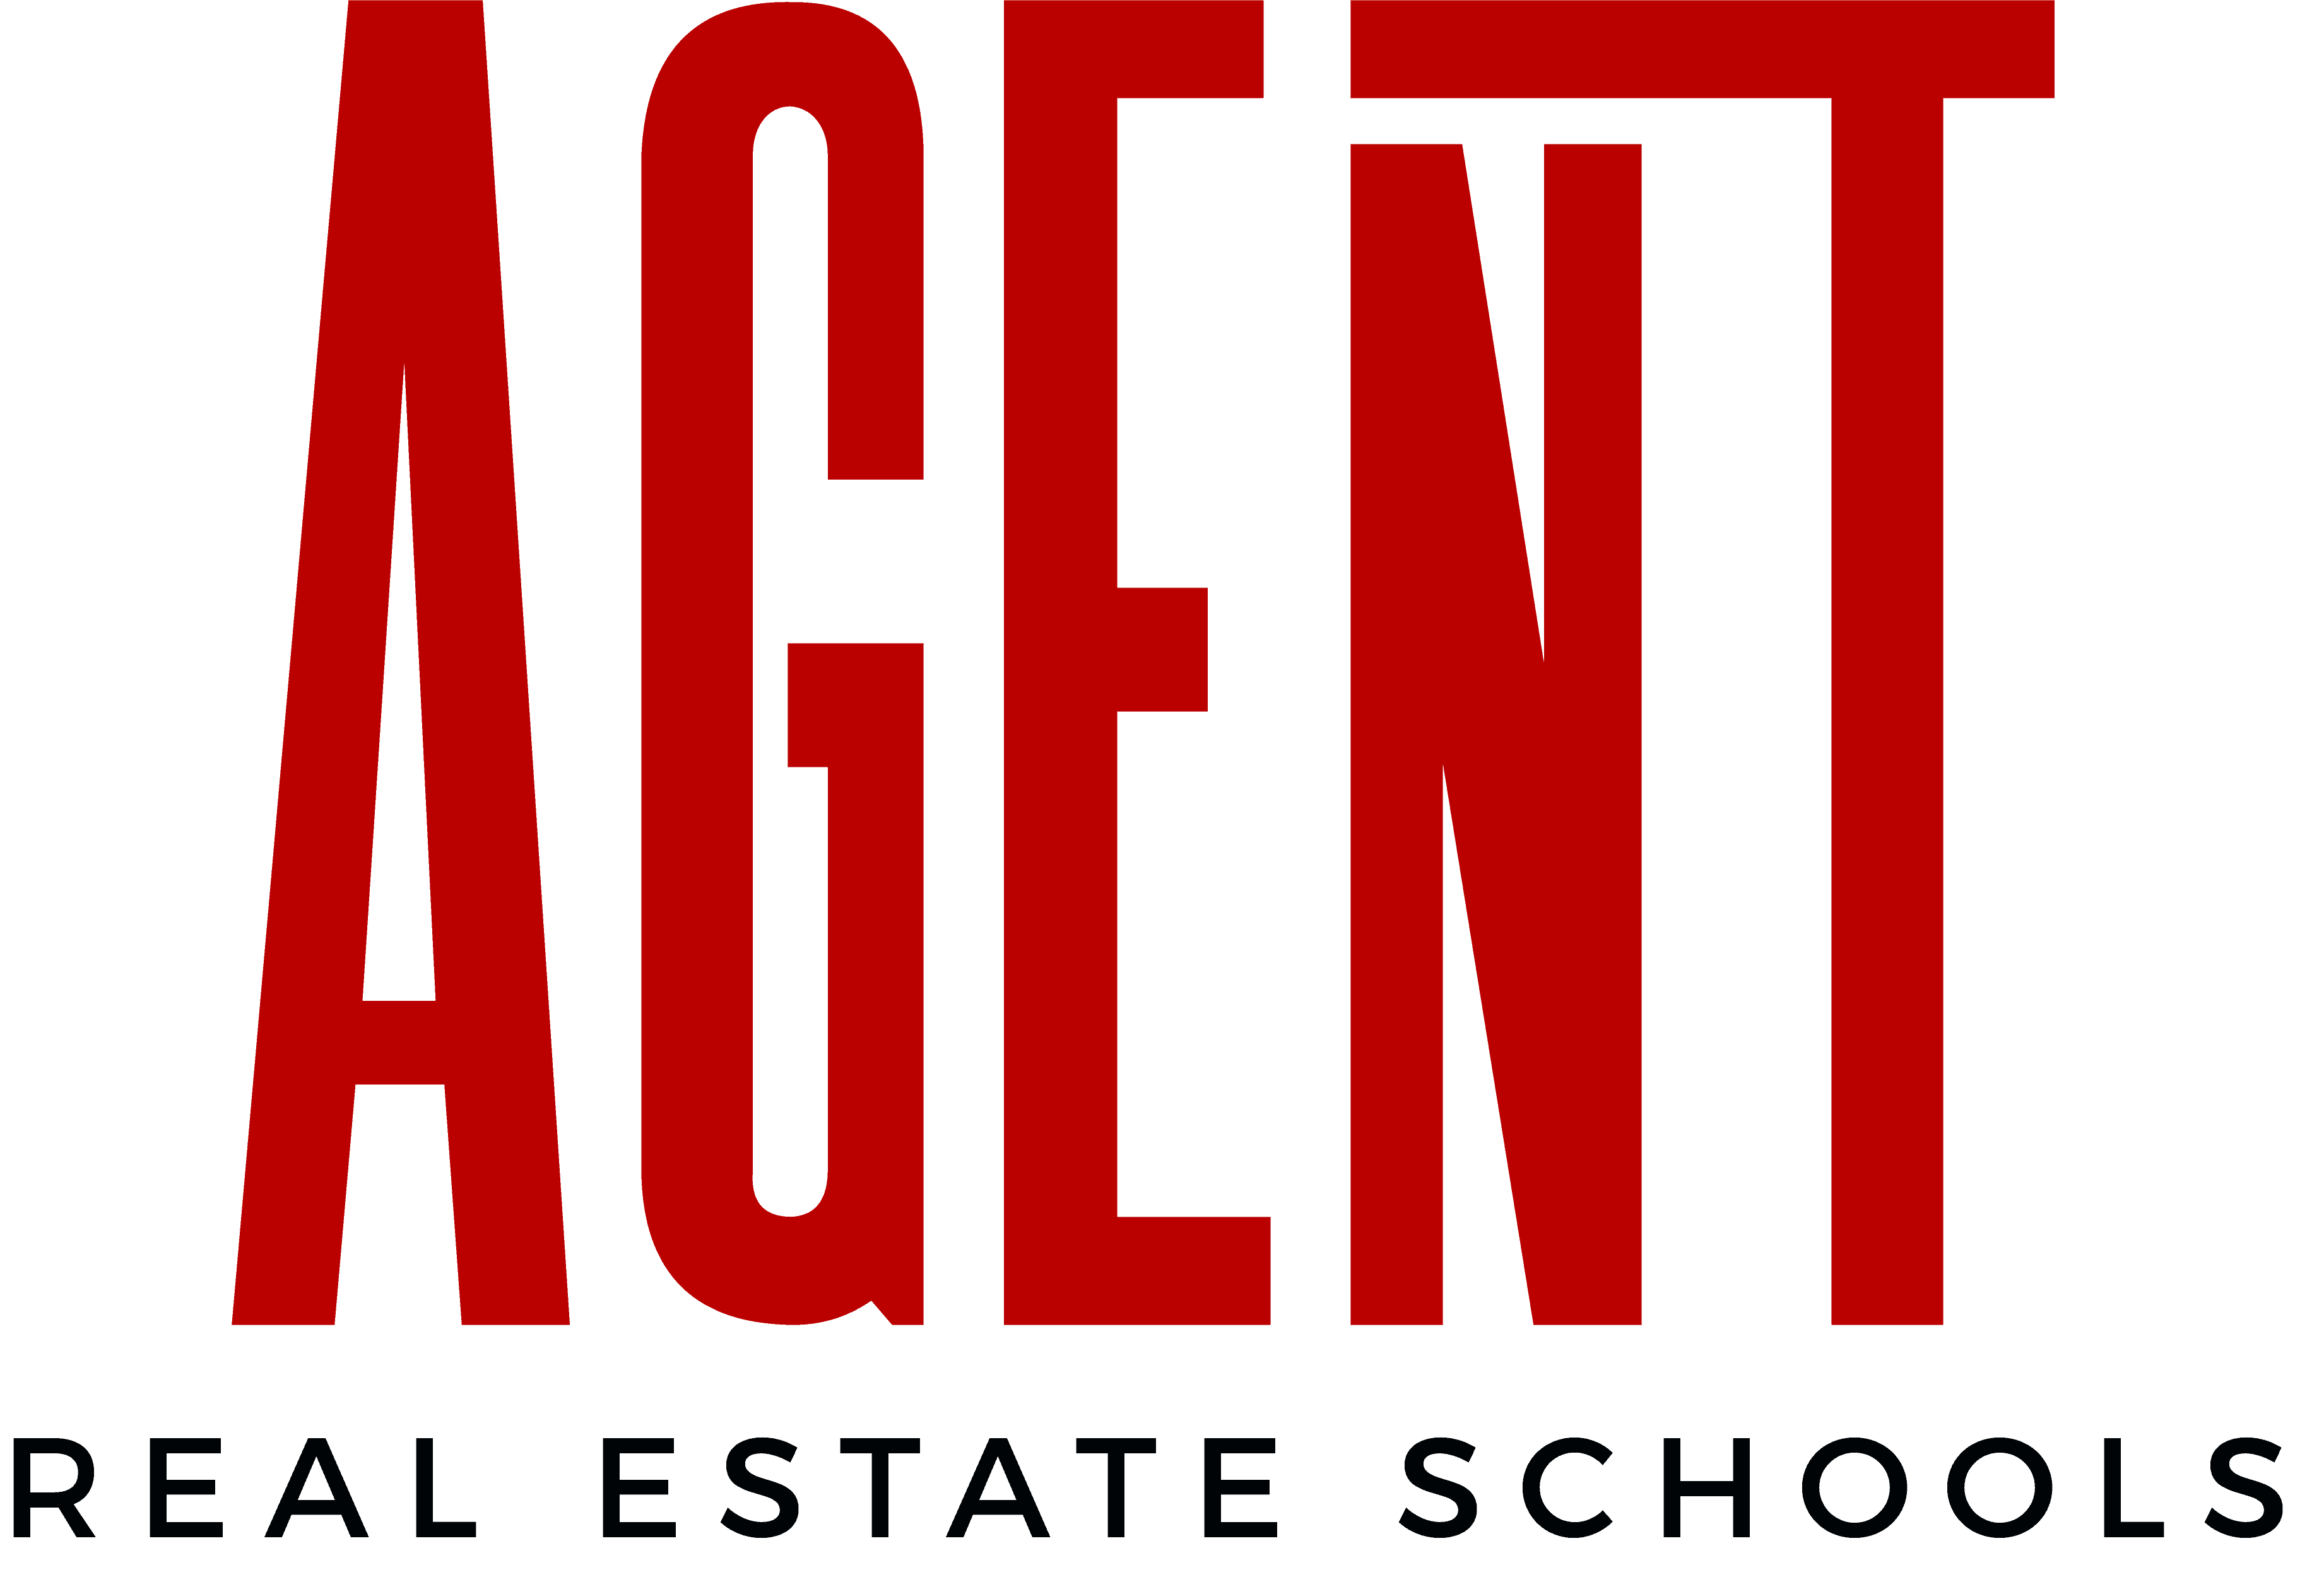 Agent Real Estate Schools